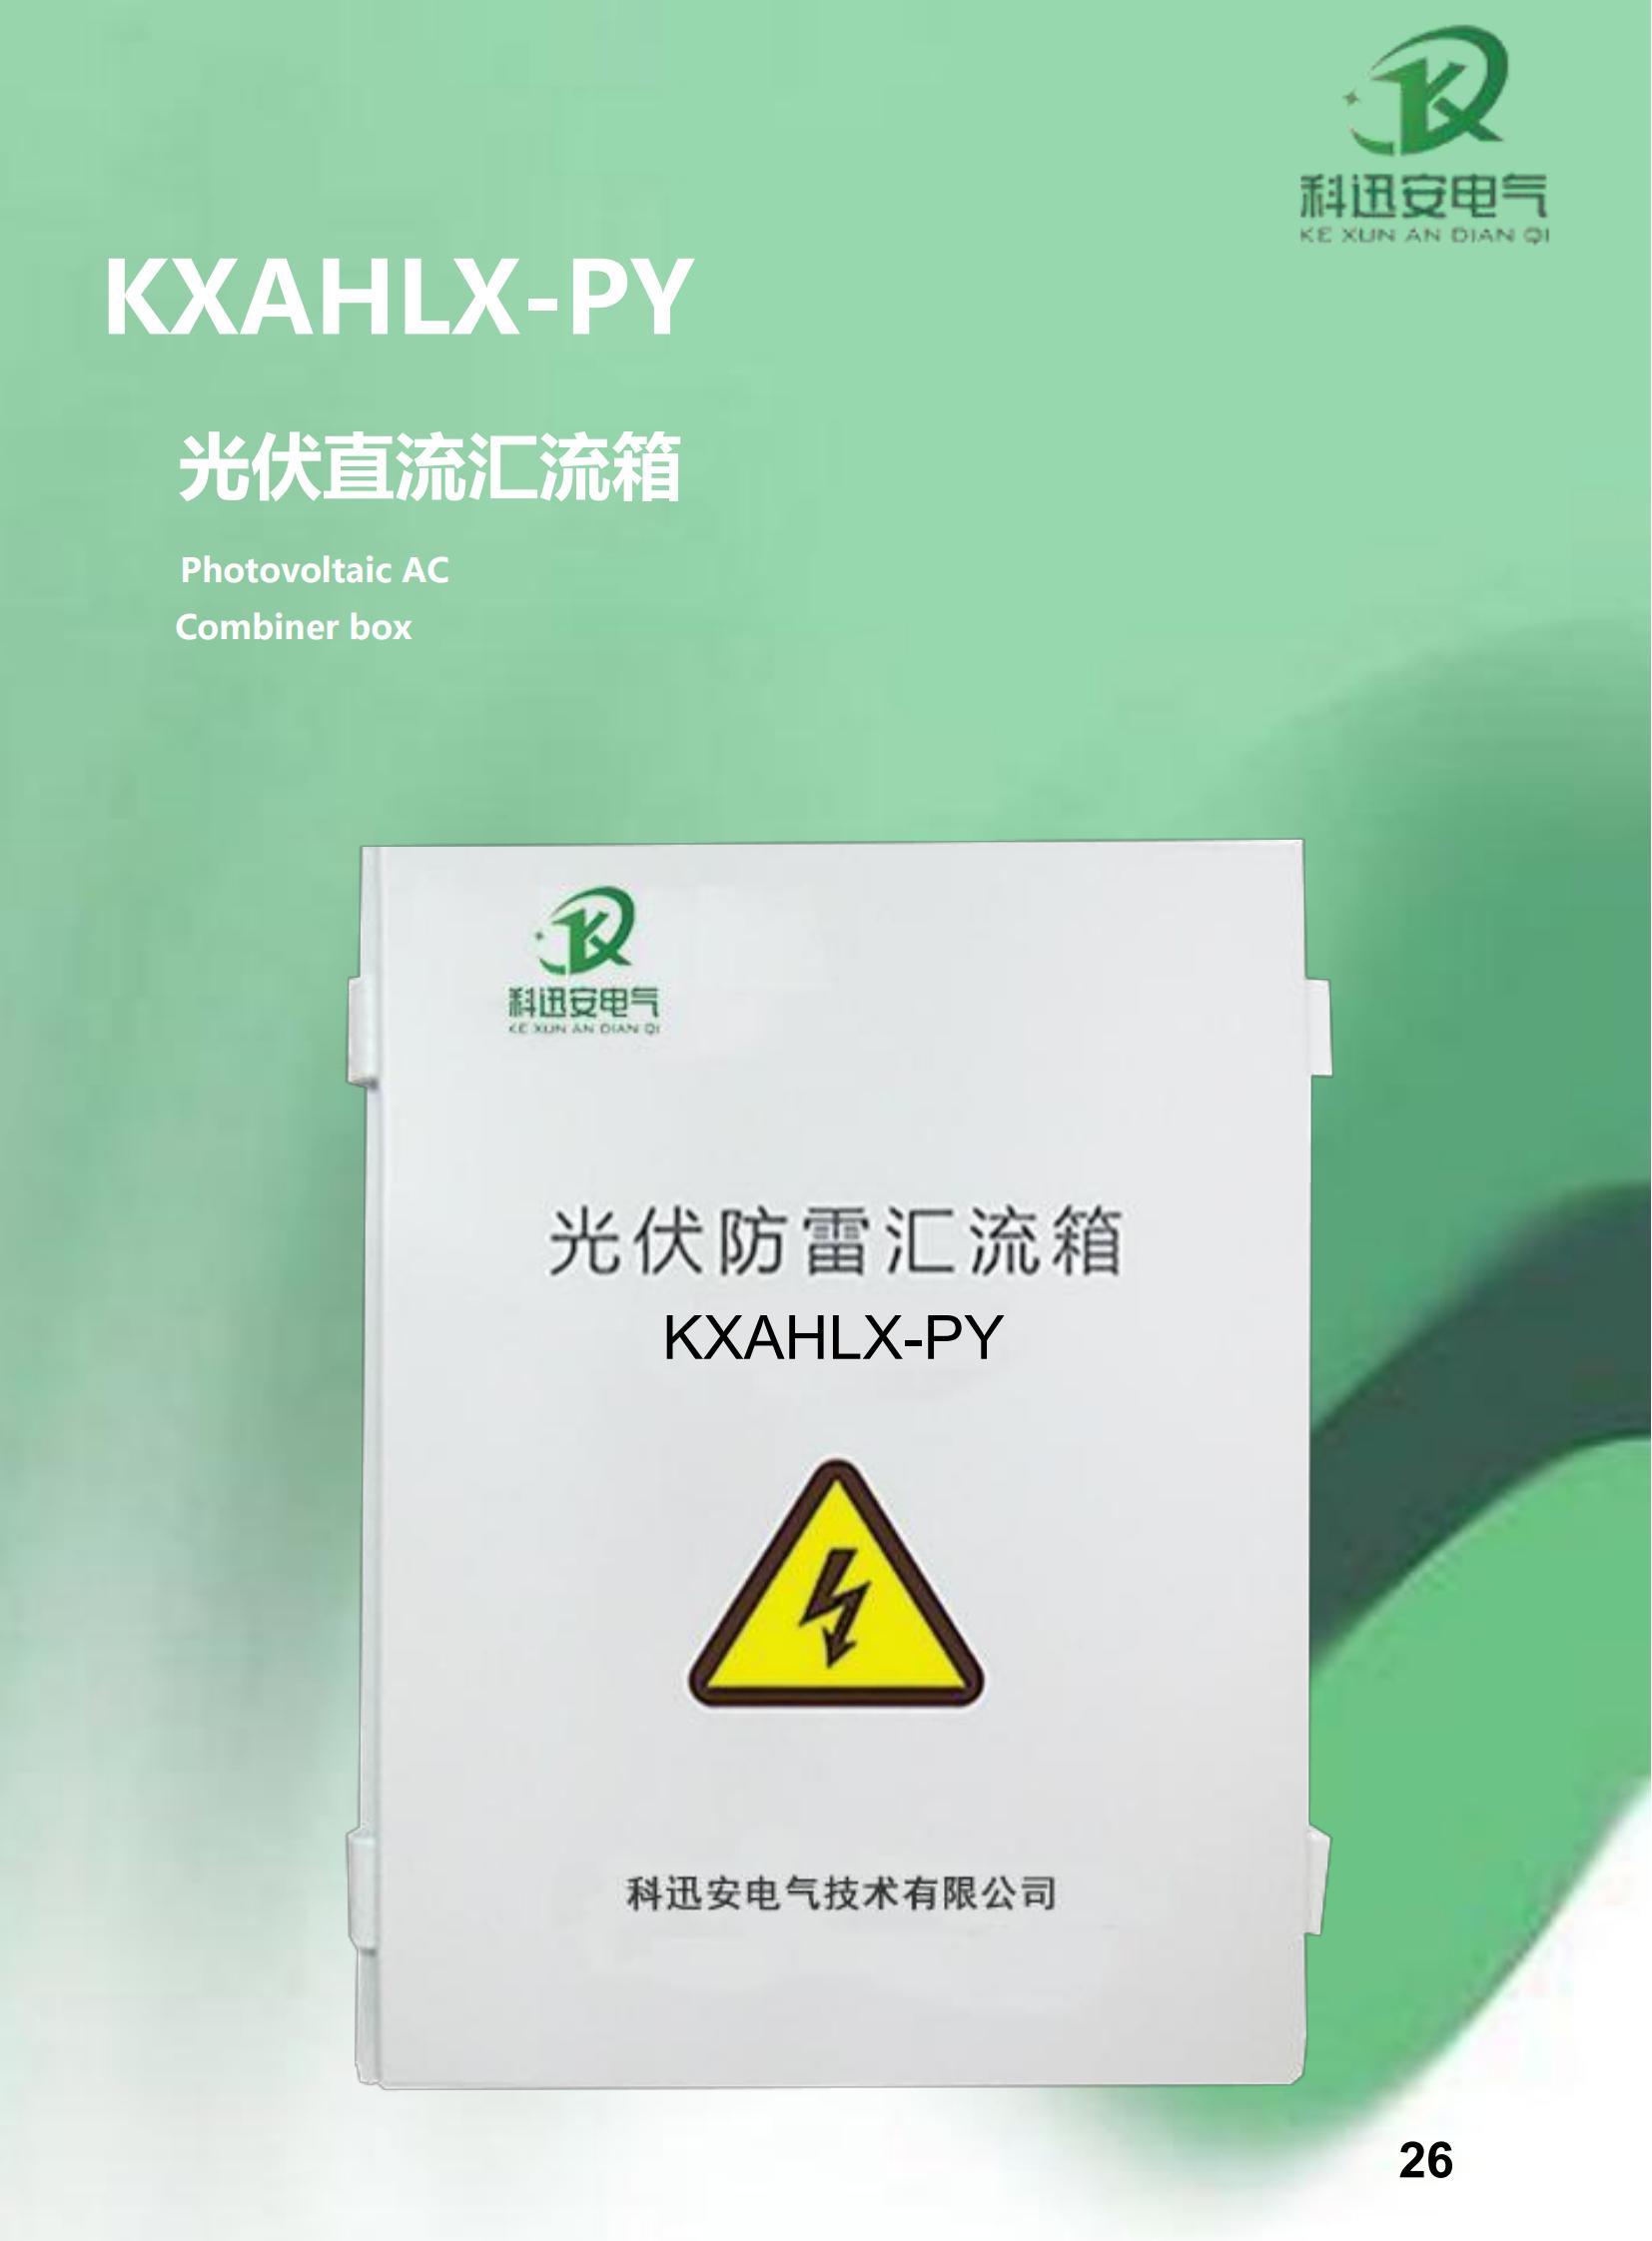 KXAHLX-PY photovoltaic combiner box